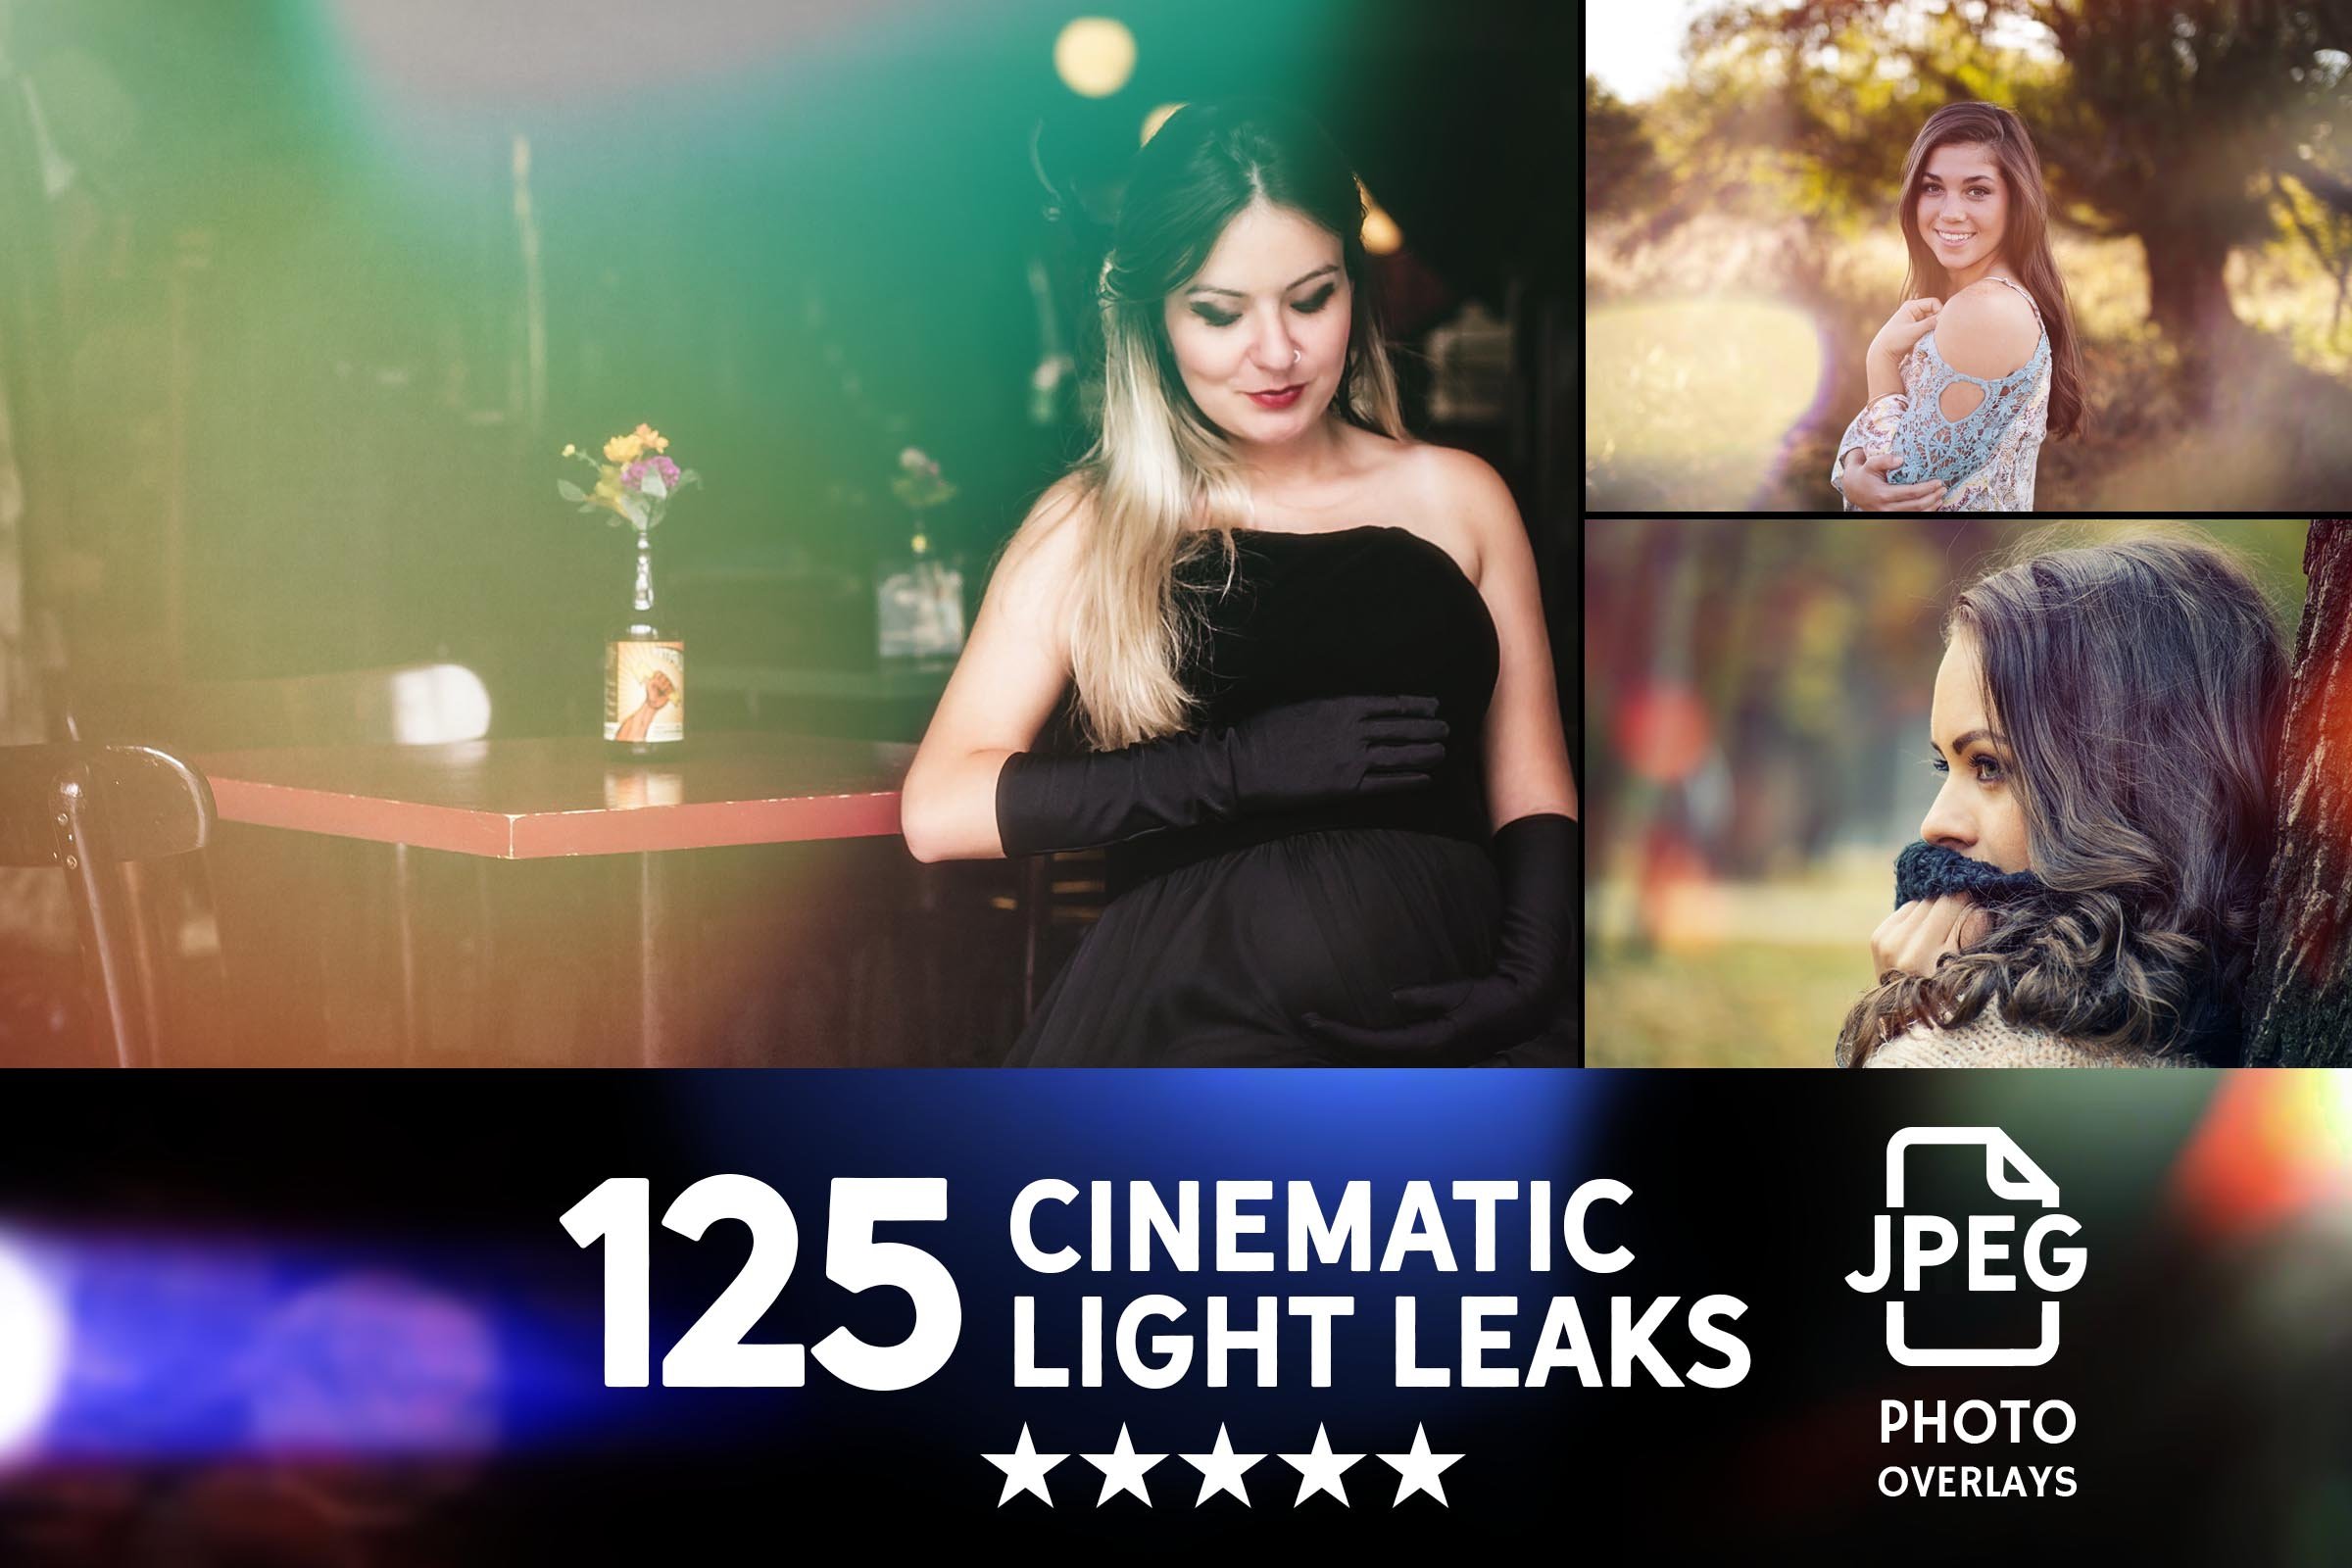 022. 125 light leaks photo overlays 743